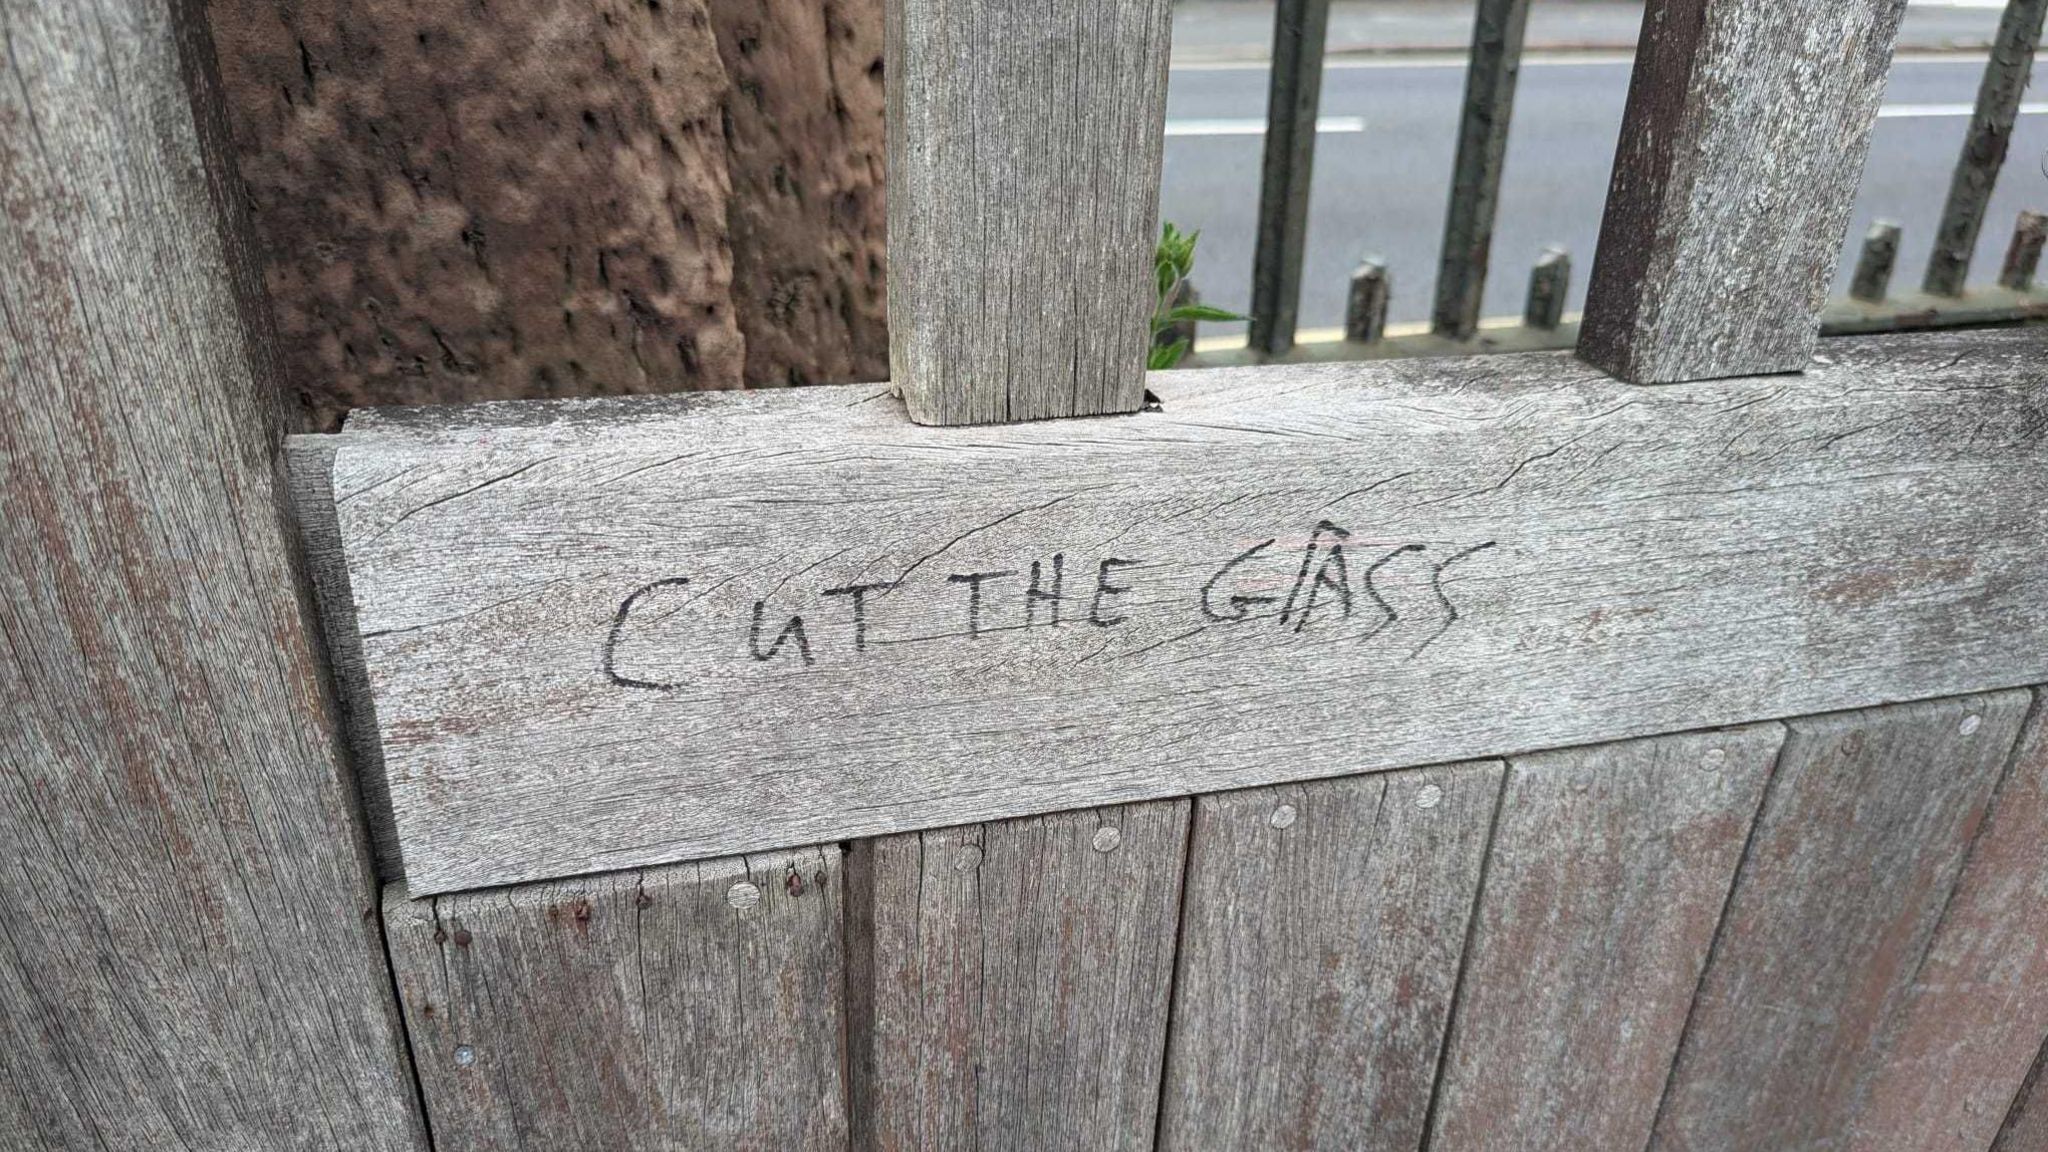 Graffiti saying cut the grass written on a wooden gate